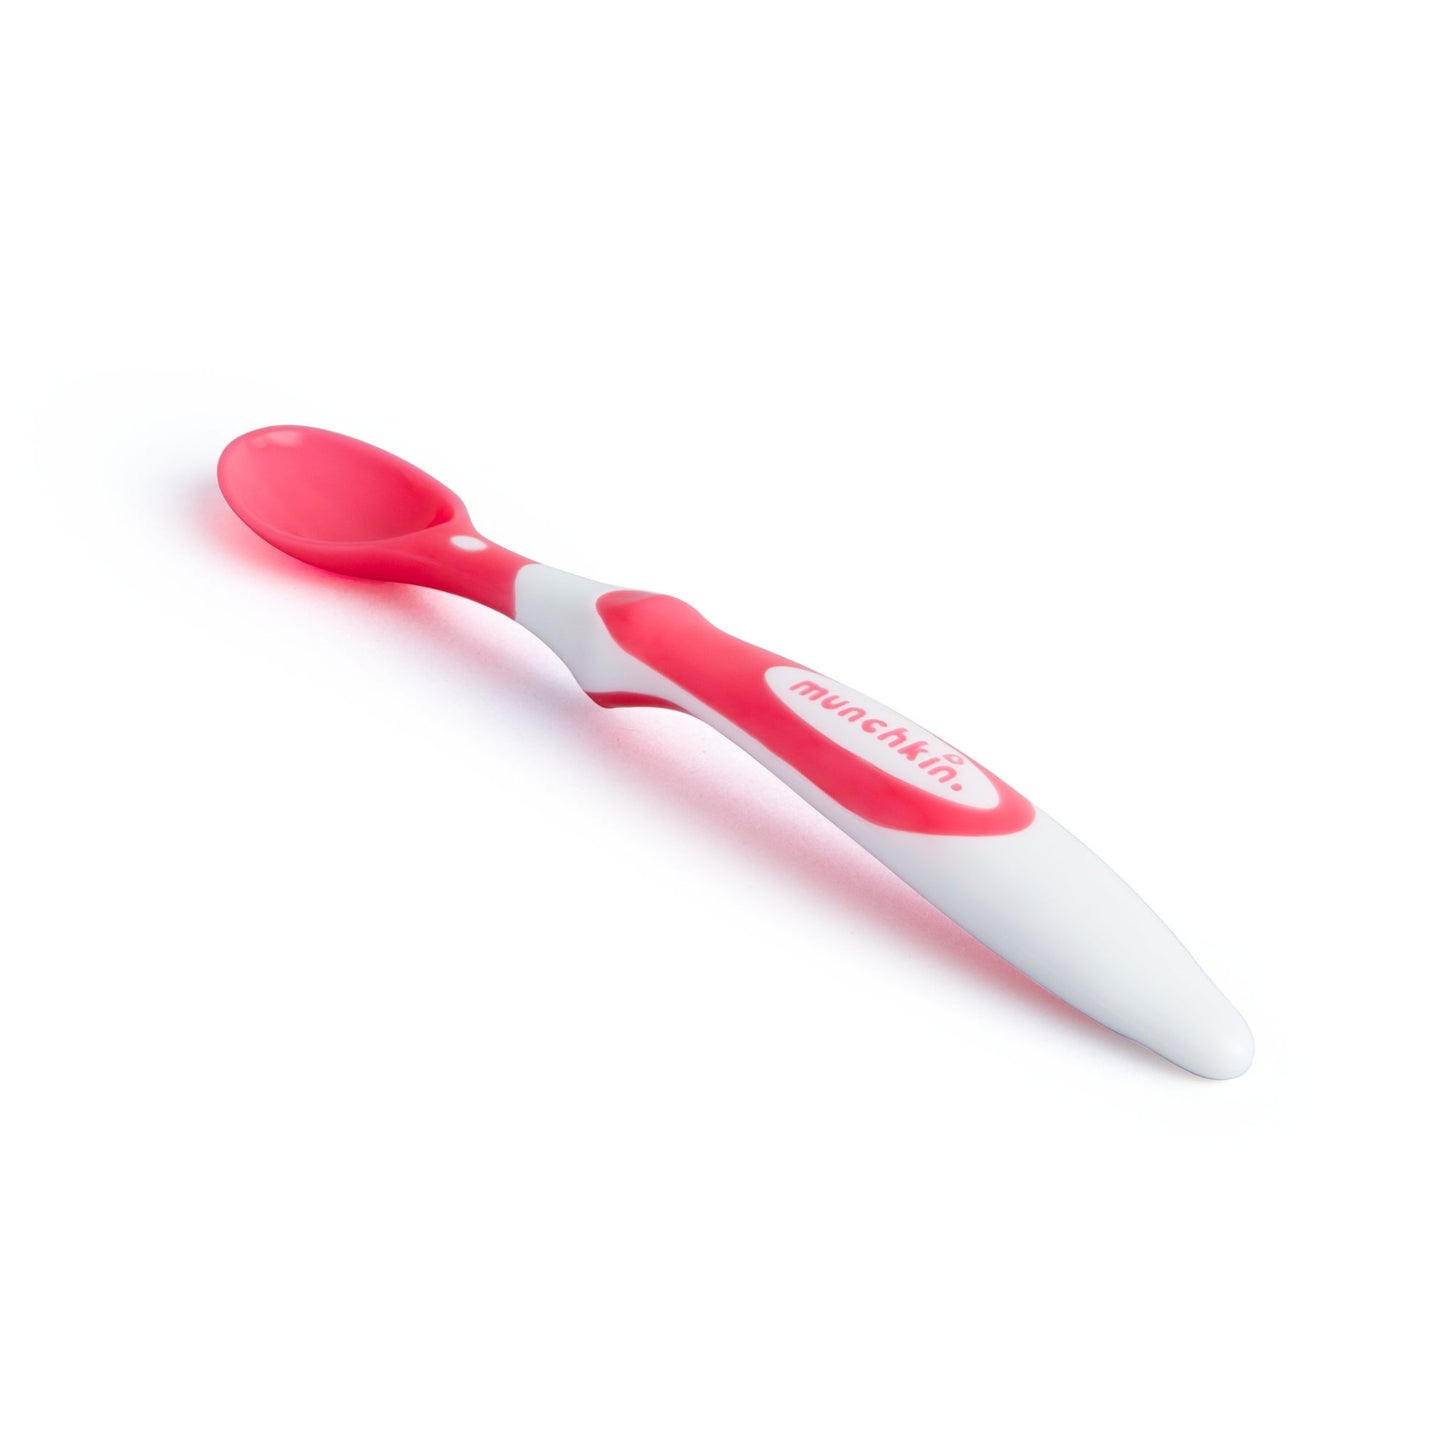 Munchkin Soft Tip Infant Spoons - 6pk